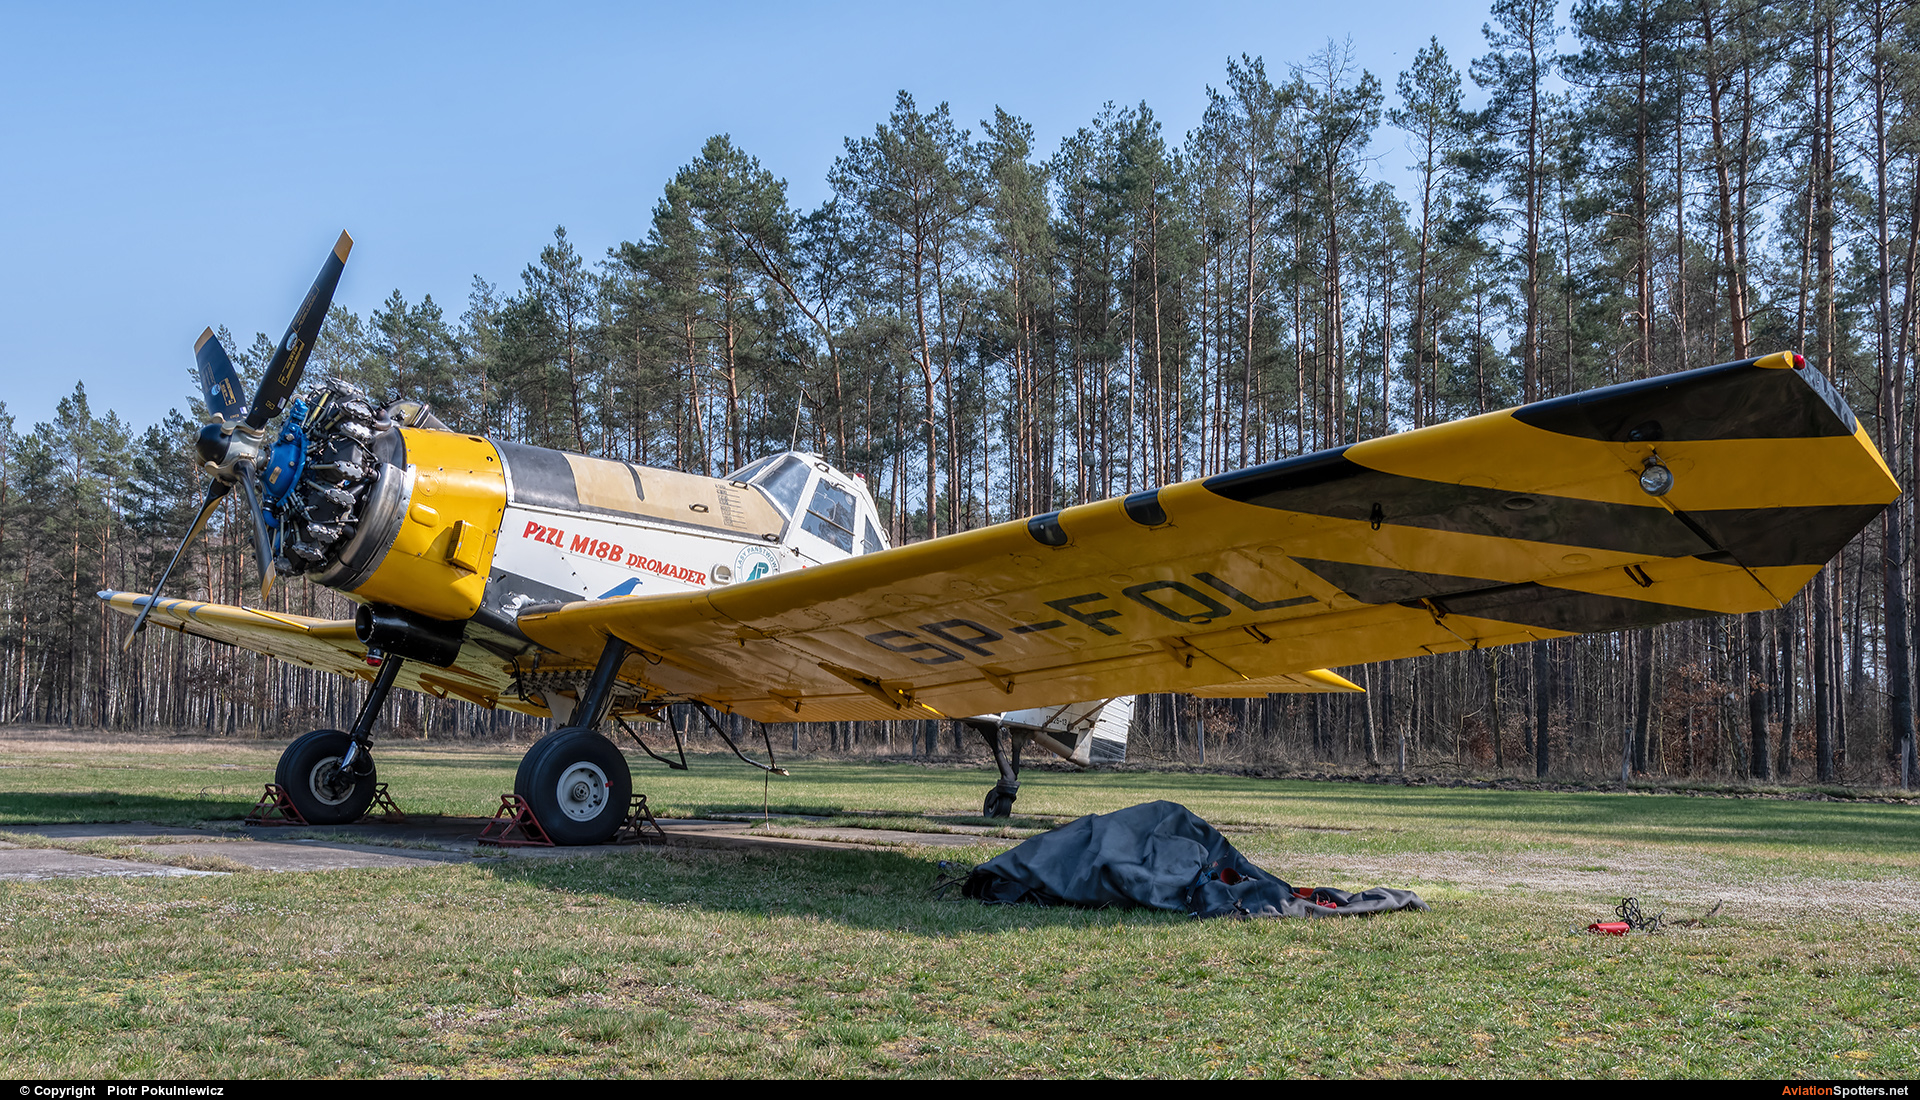 Aerogryf  -  M-18 Dromader  (SP-FOL) By Piotr Pokulniewicz (Piciu)